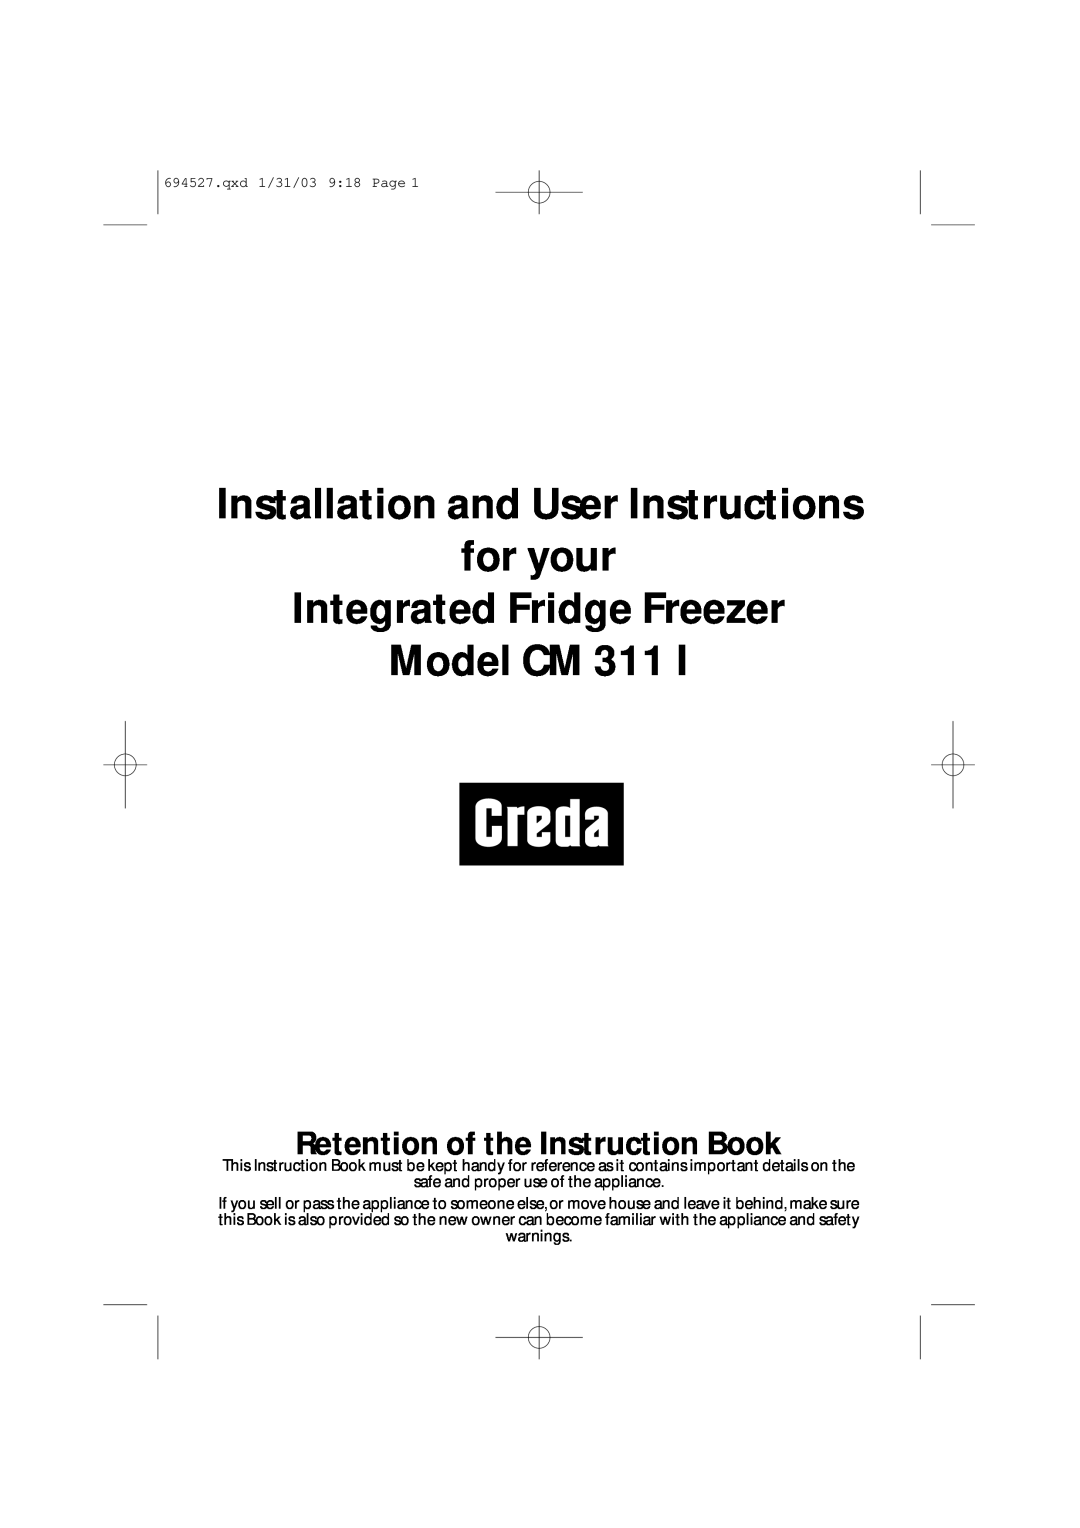 Creda CM 311 I manual Retention of the Instruction Book, Model CM 